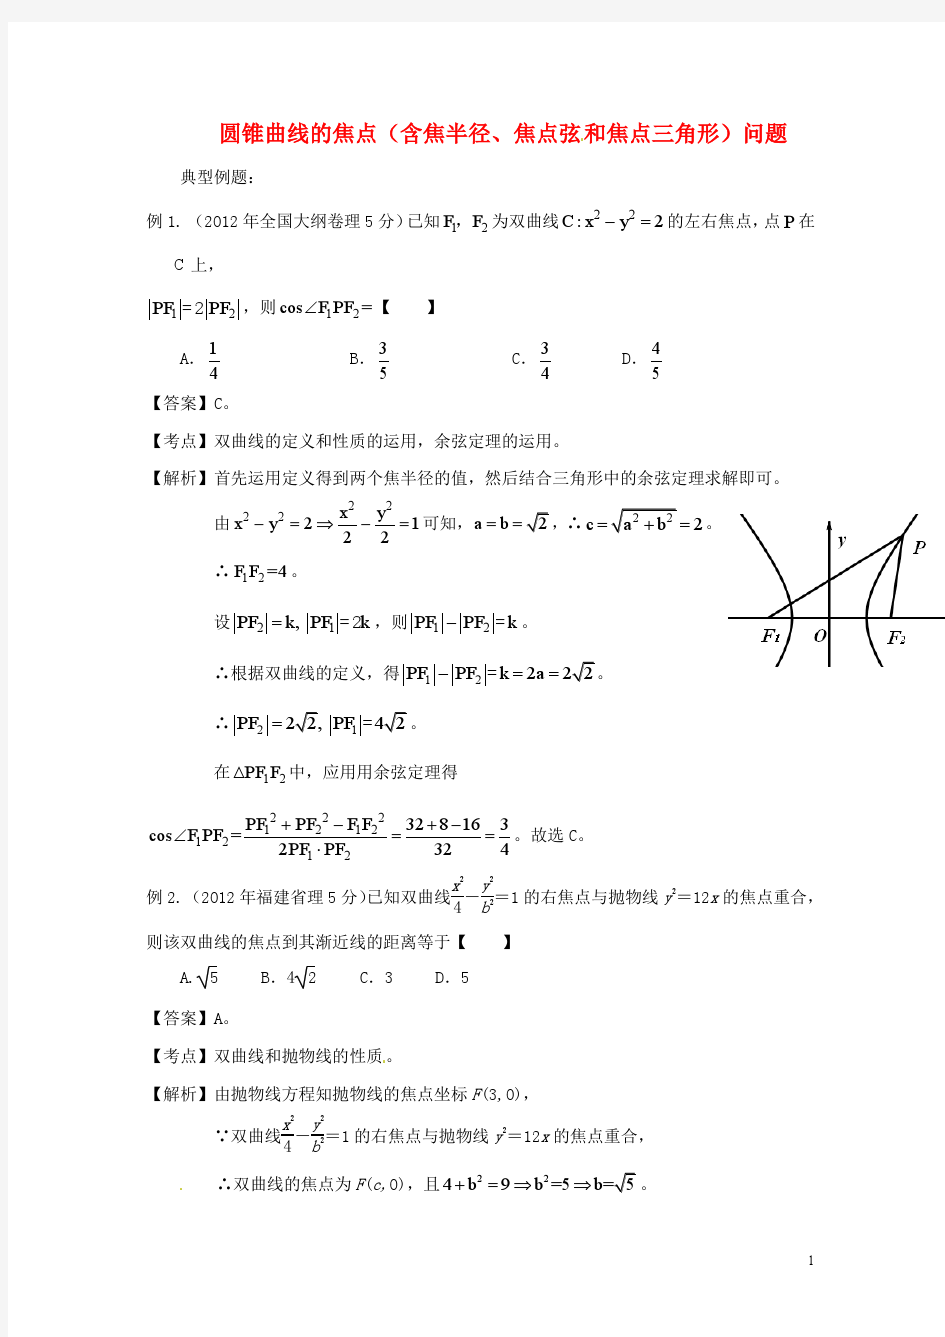 【备战2014】高考数学 高频考点归类分析 圆锥曲线的焦点问题(真题为例)